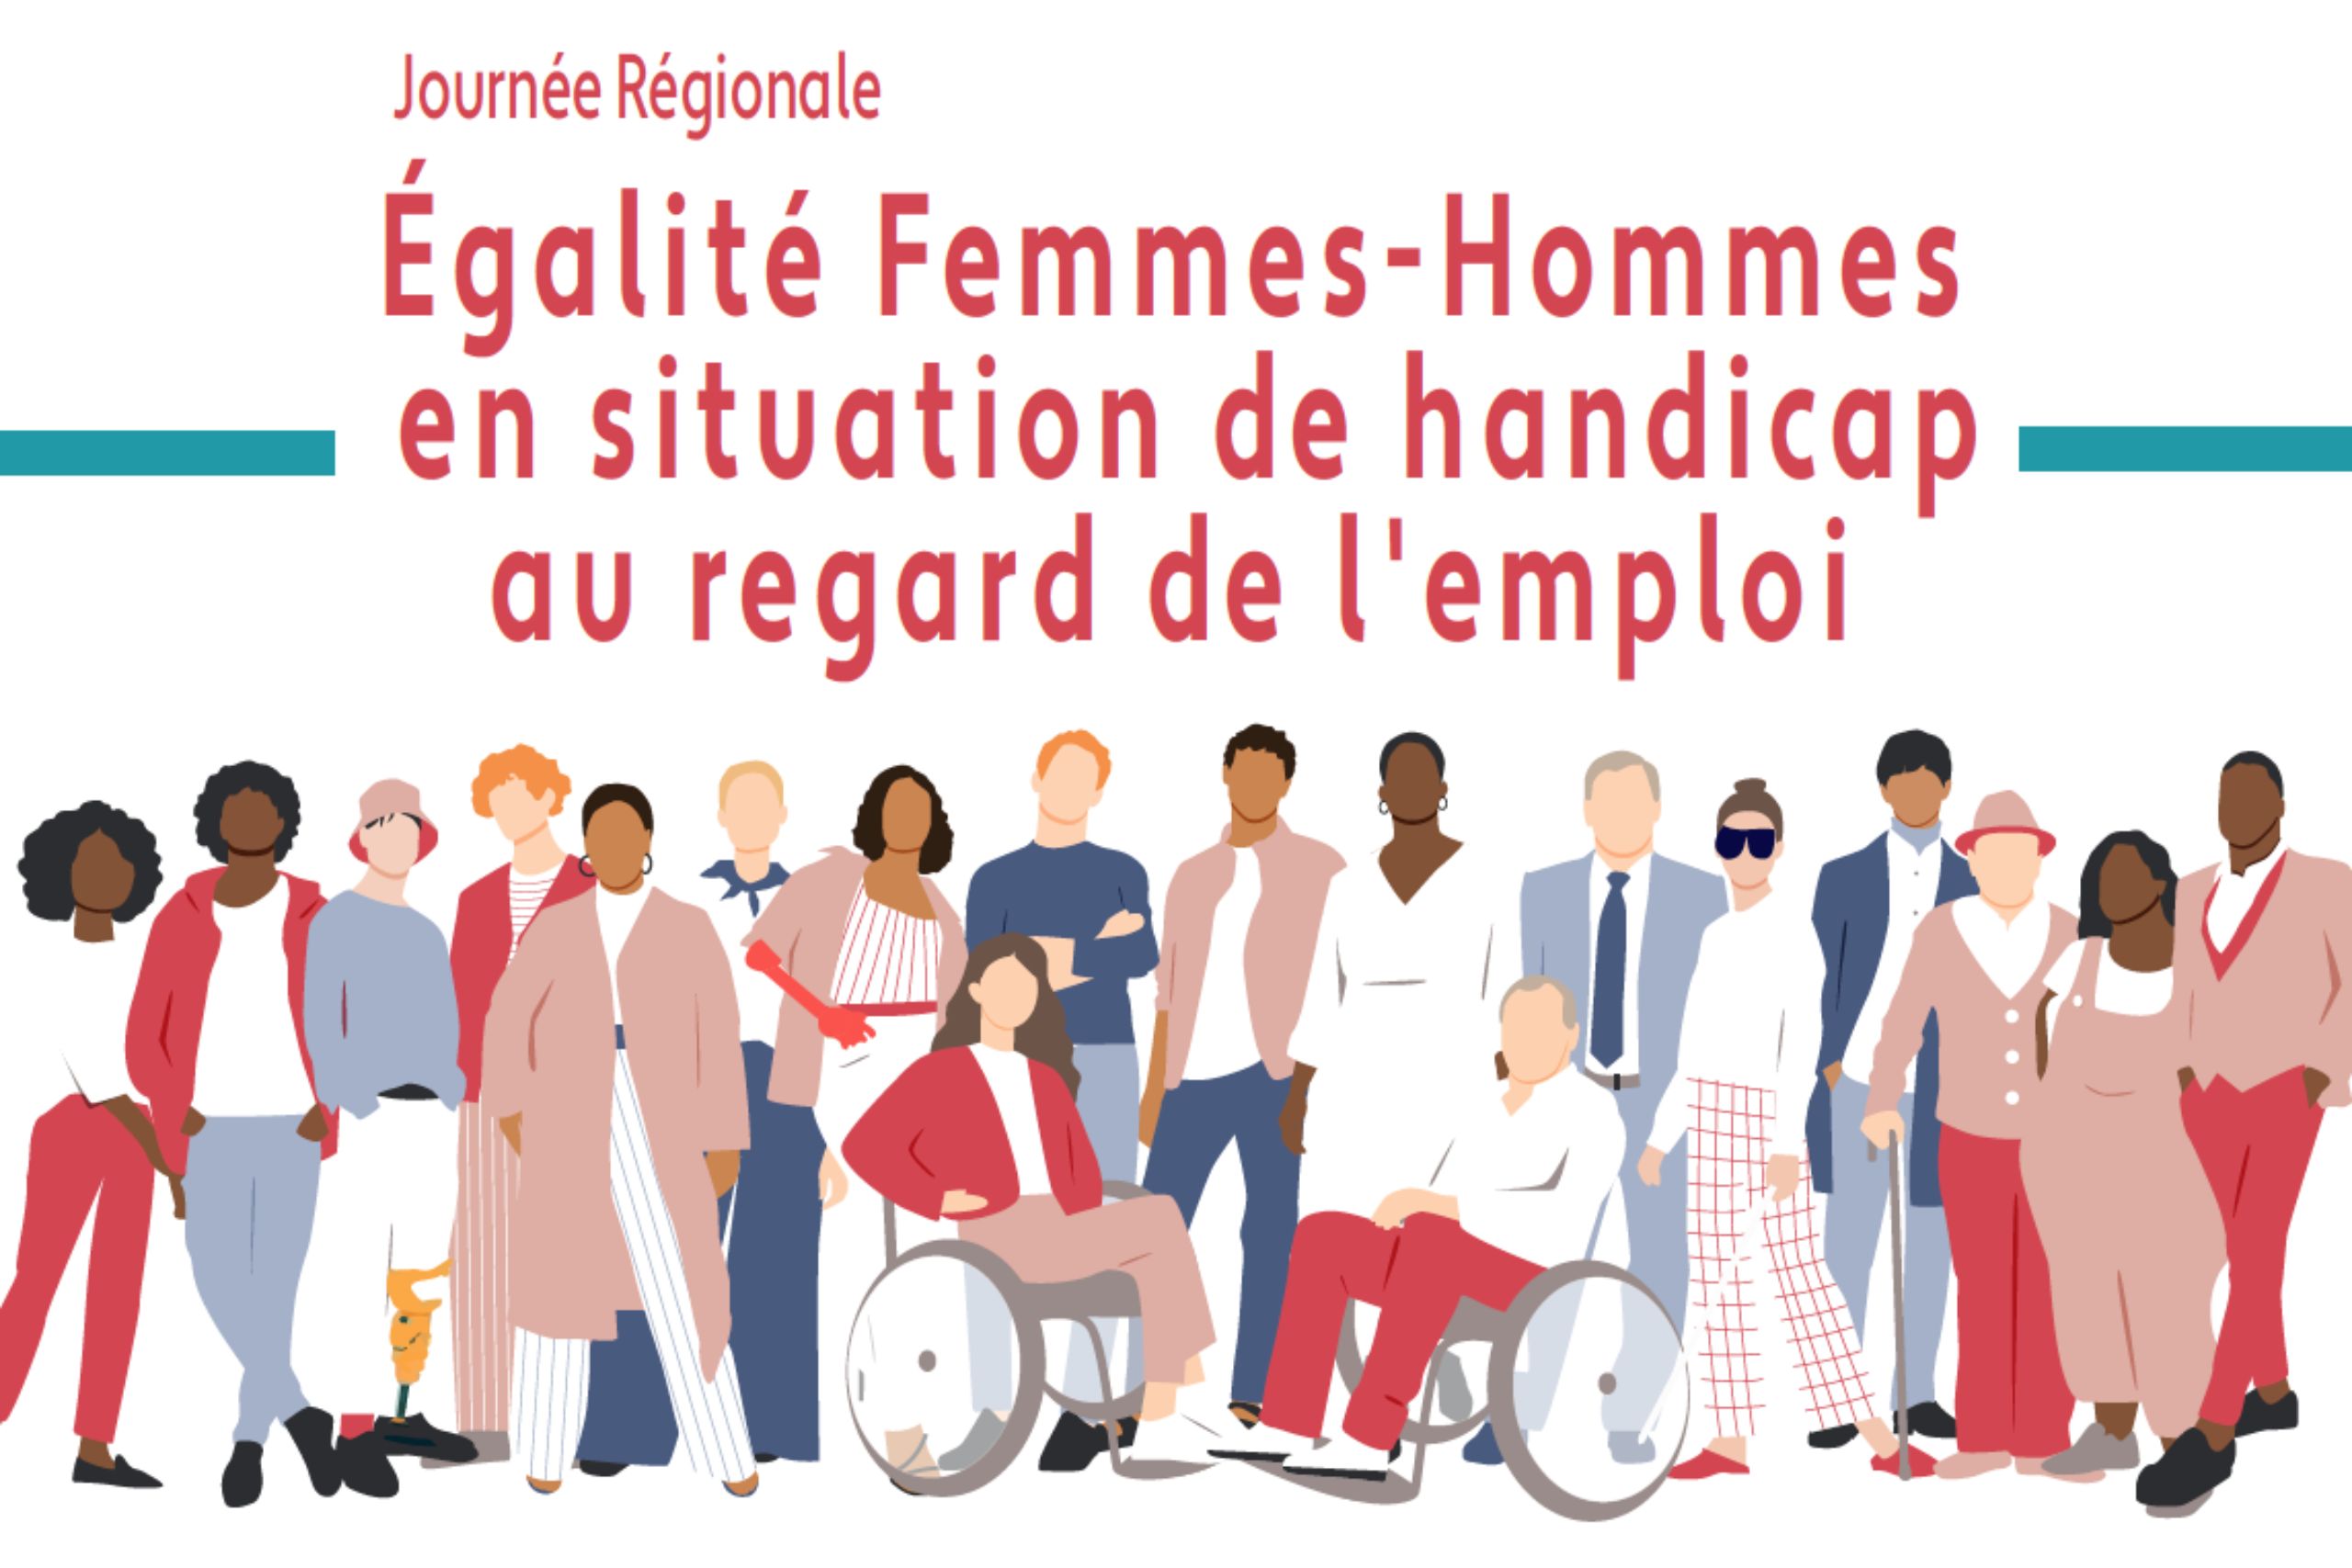 Journée régionale égalité femmes-hommes en situation de handicap au regard de l’emploi